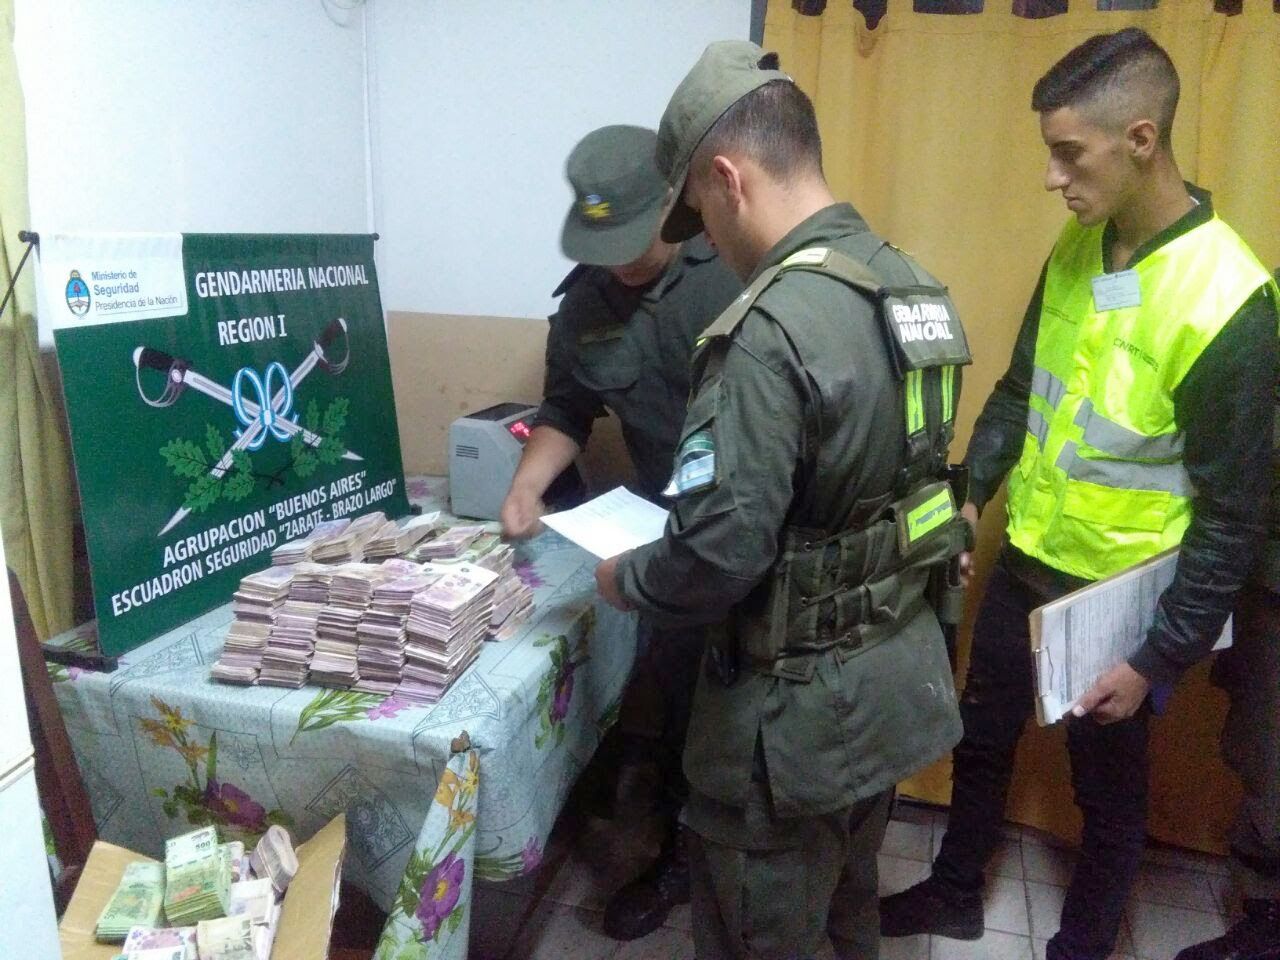 Zárate: Gendarmería secuestró más de 1,7 millones de pesos de los que no sabía su procedencia